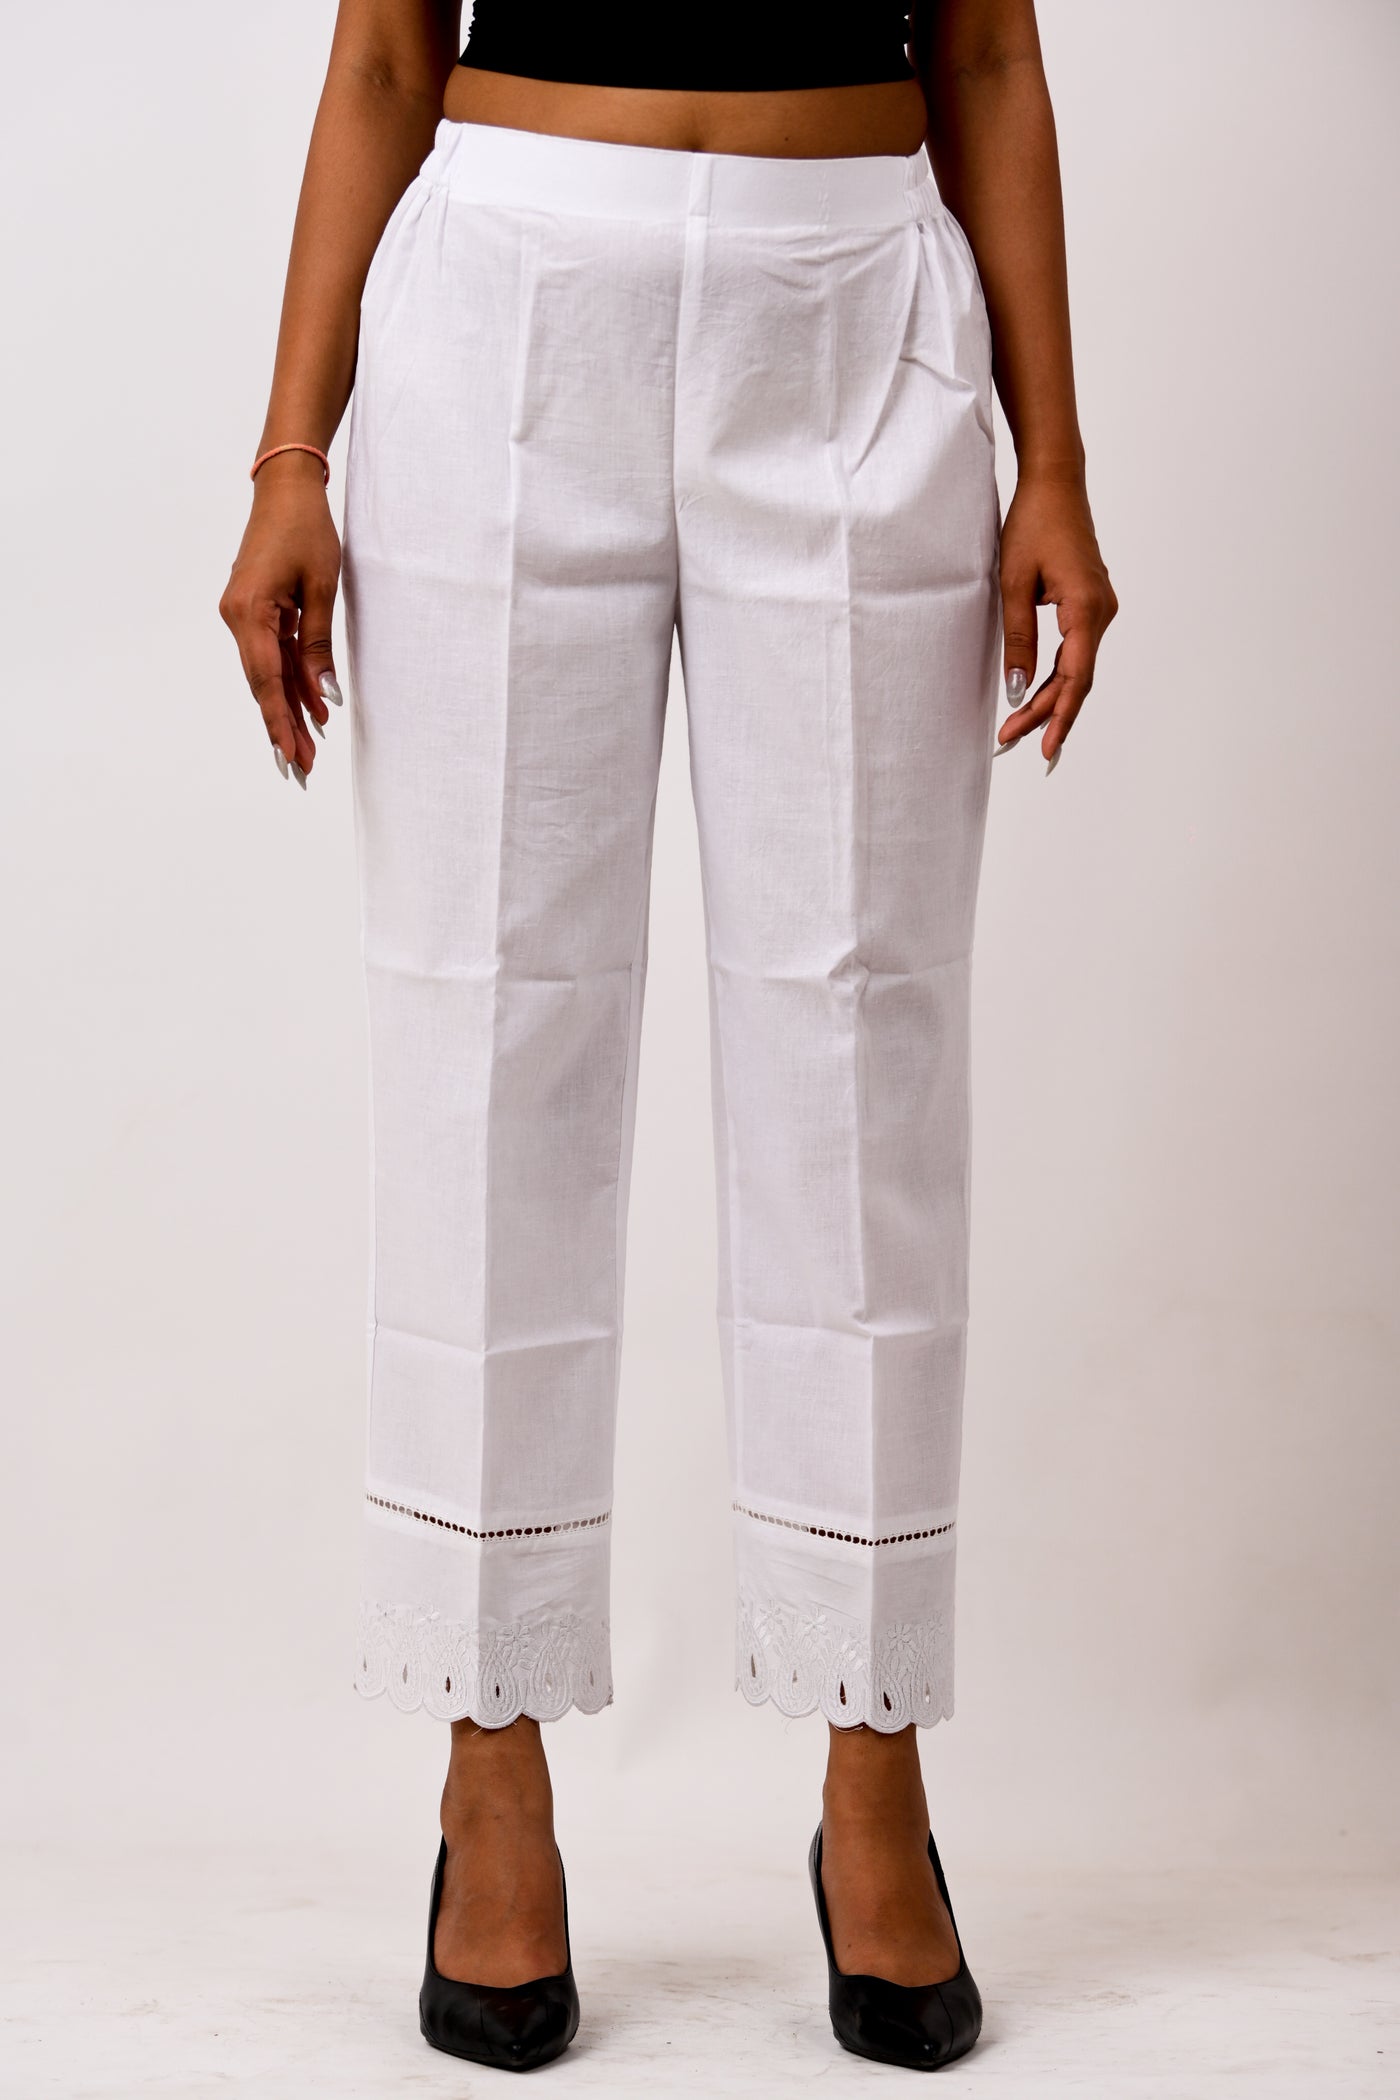 Paisley Cotton Pants - White on white